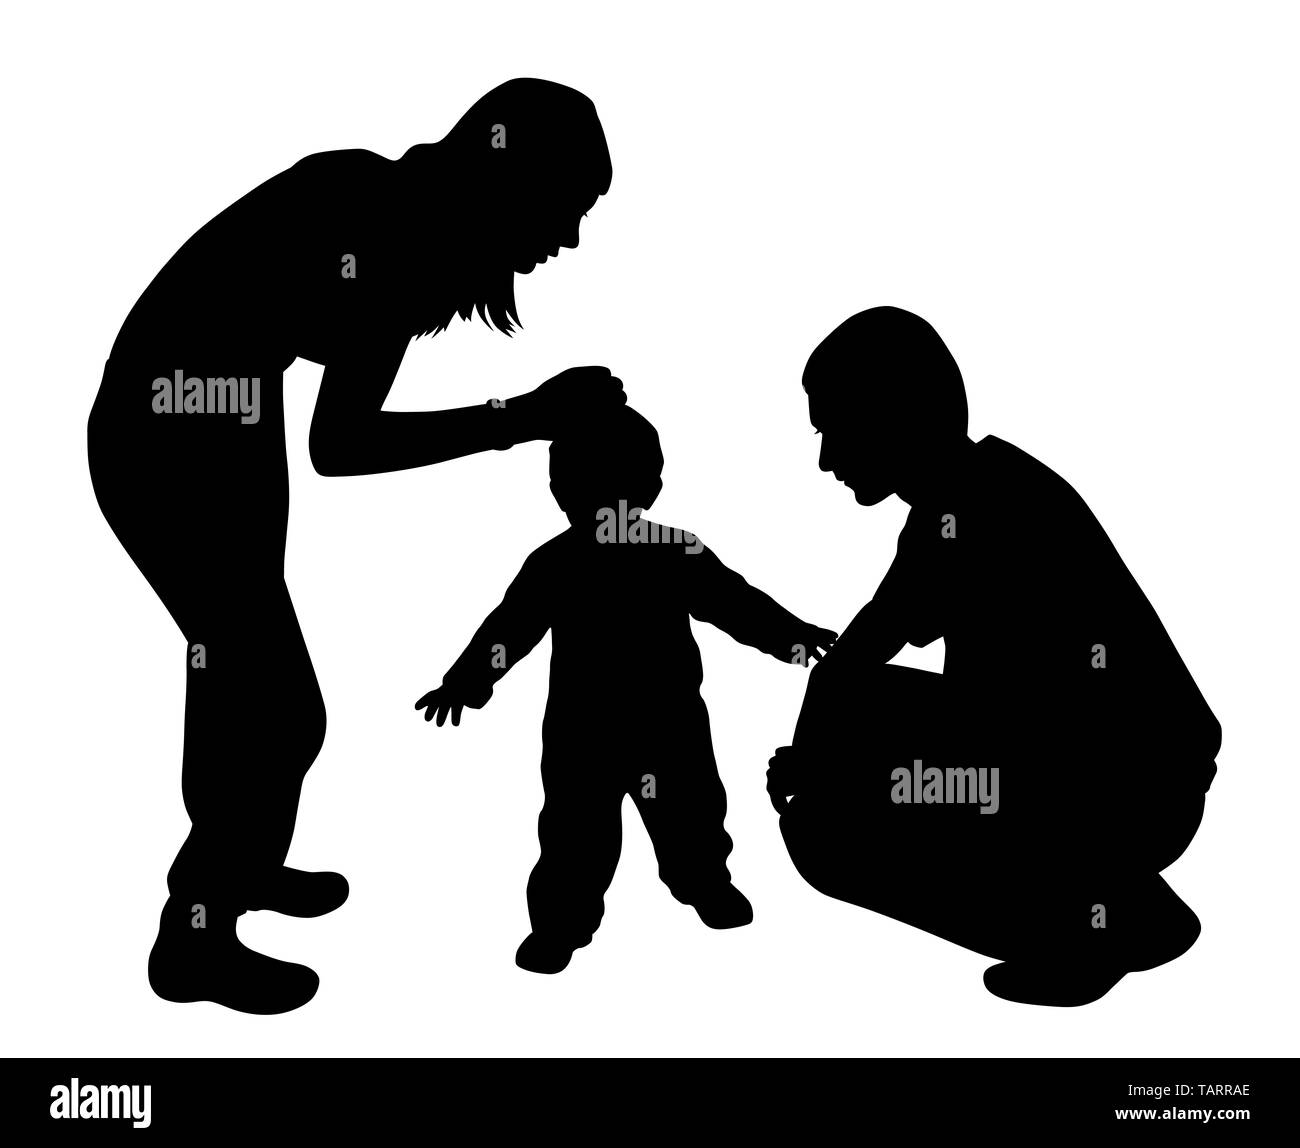 Liebevolle Mutter und Vater mit Kind. Mutter streichelt Kind während Vater mit Mutter und Kind zusammen. Zuneigung Zusammengehörigkeit Konzept. Stockfoto